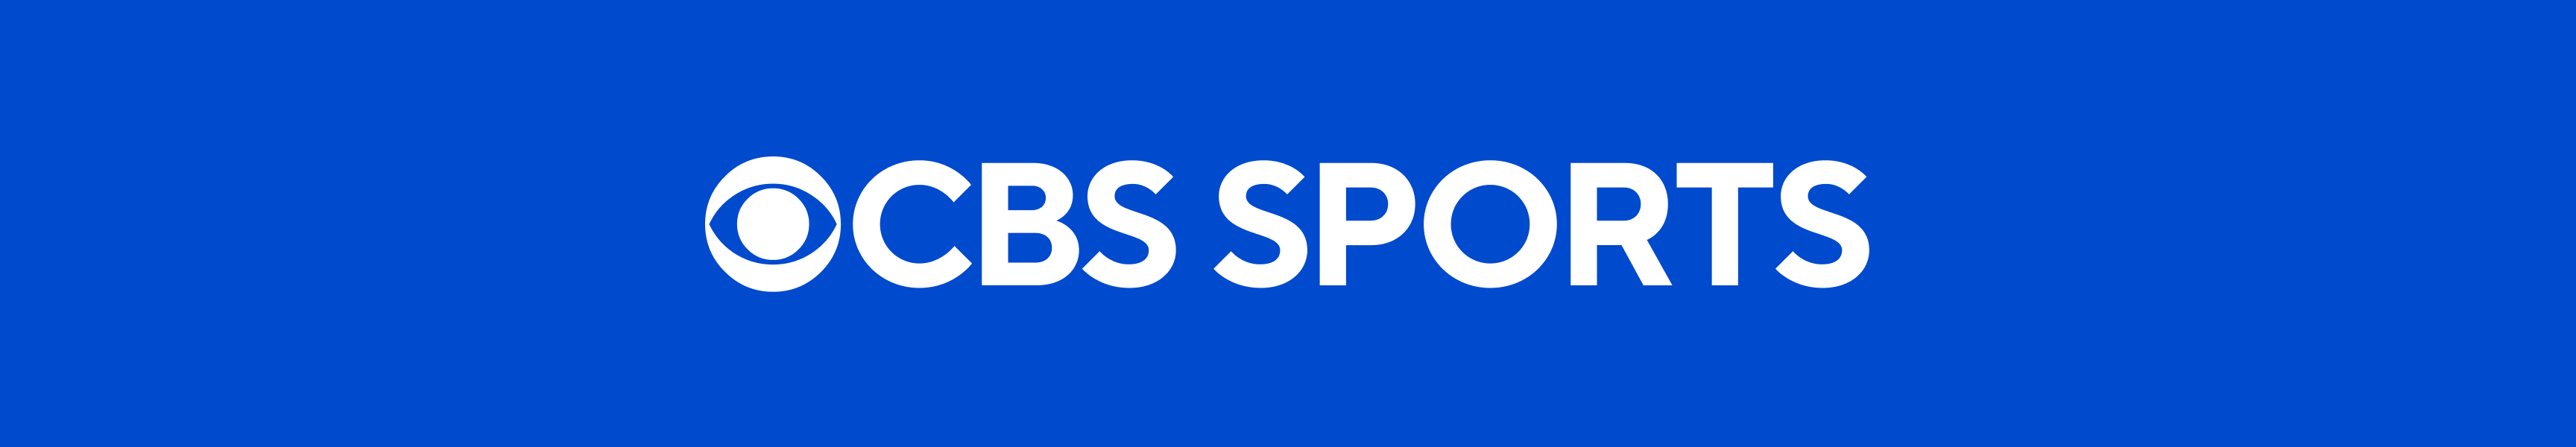 CBS Sports Meistverkaufte Produkte